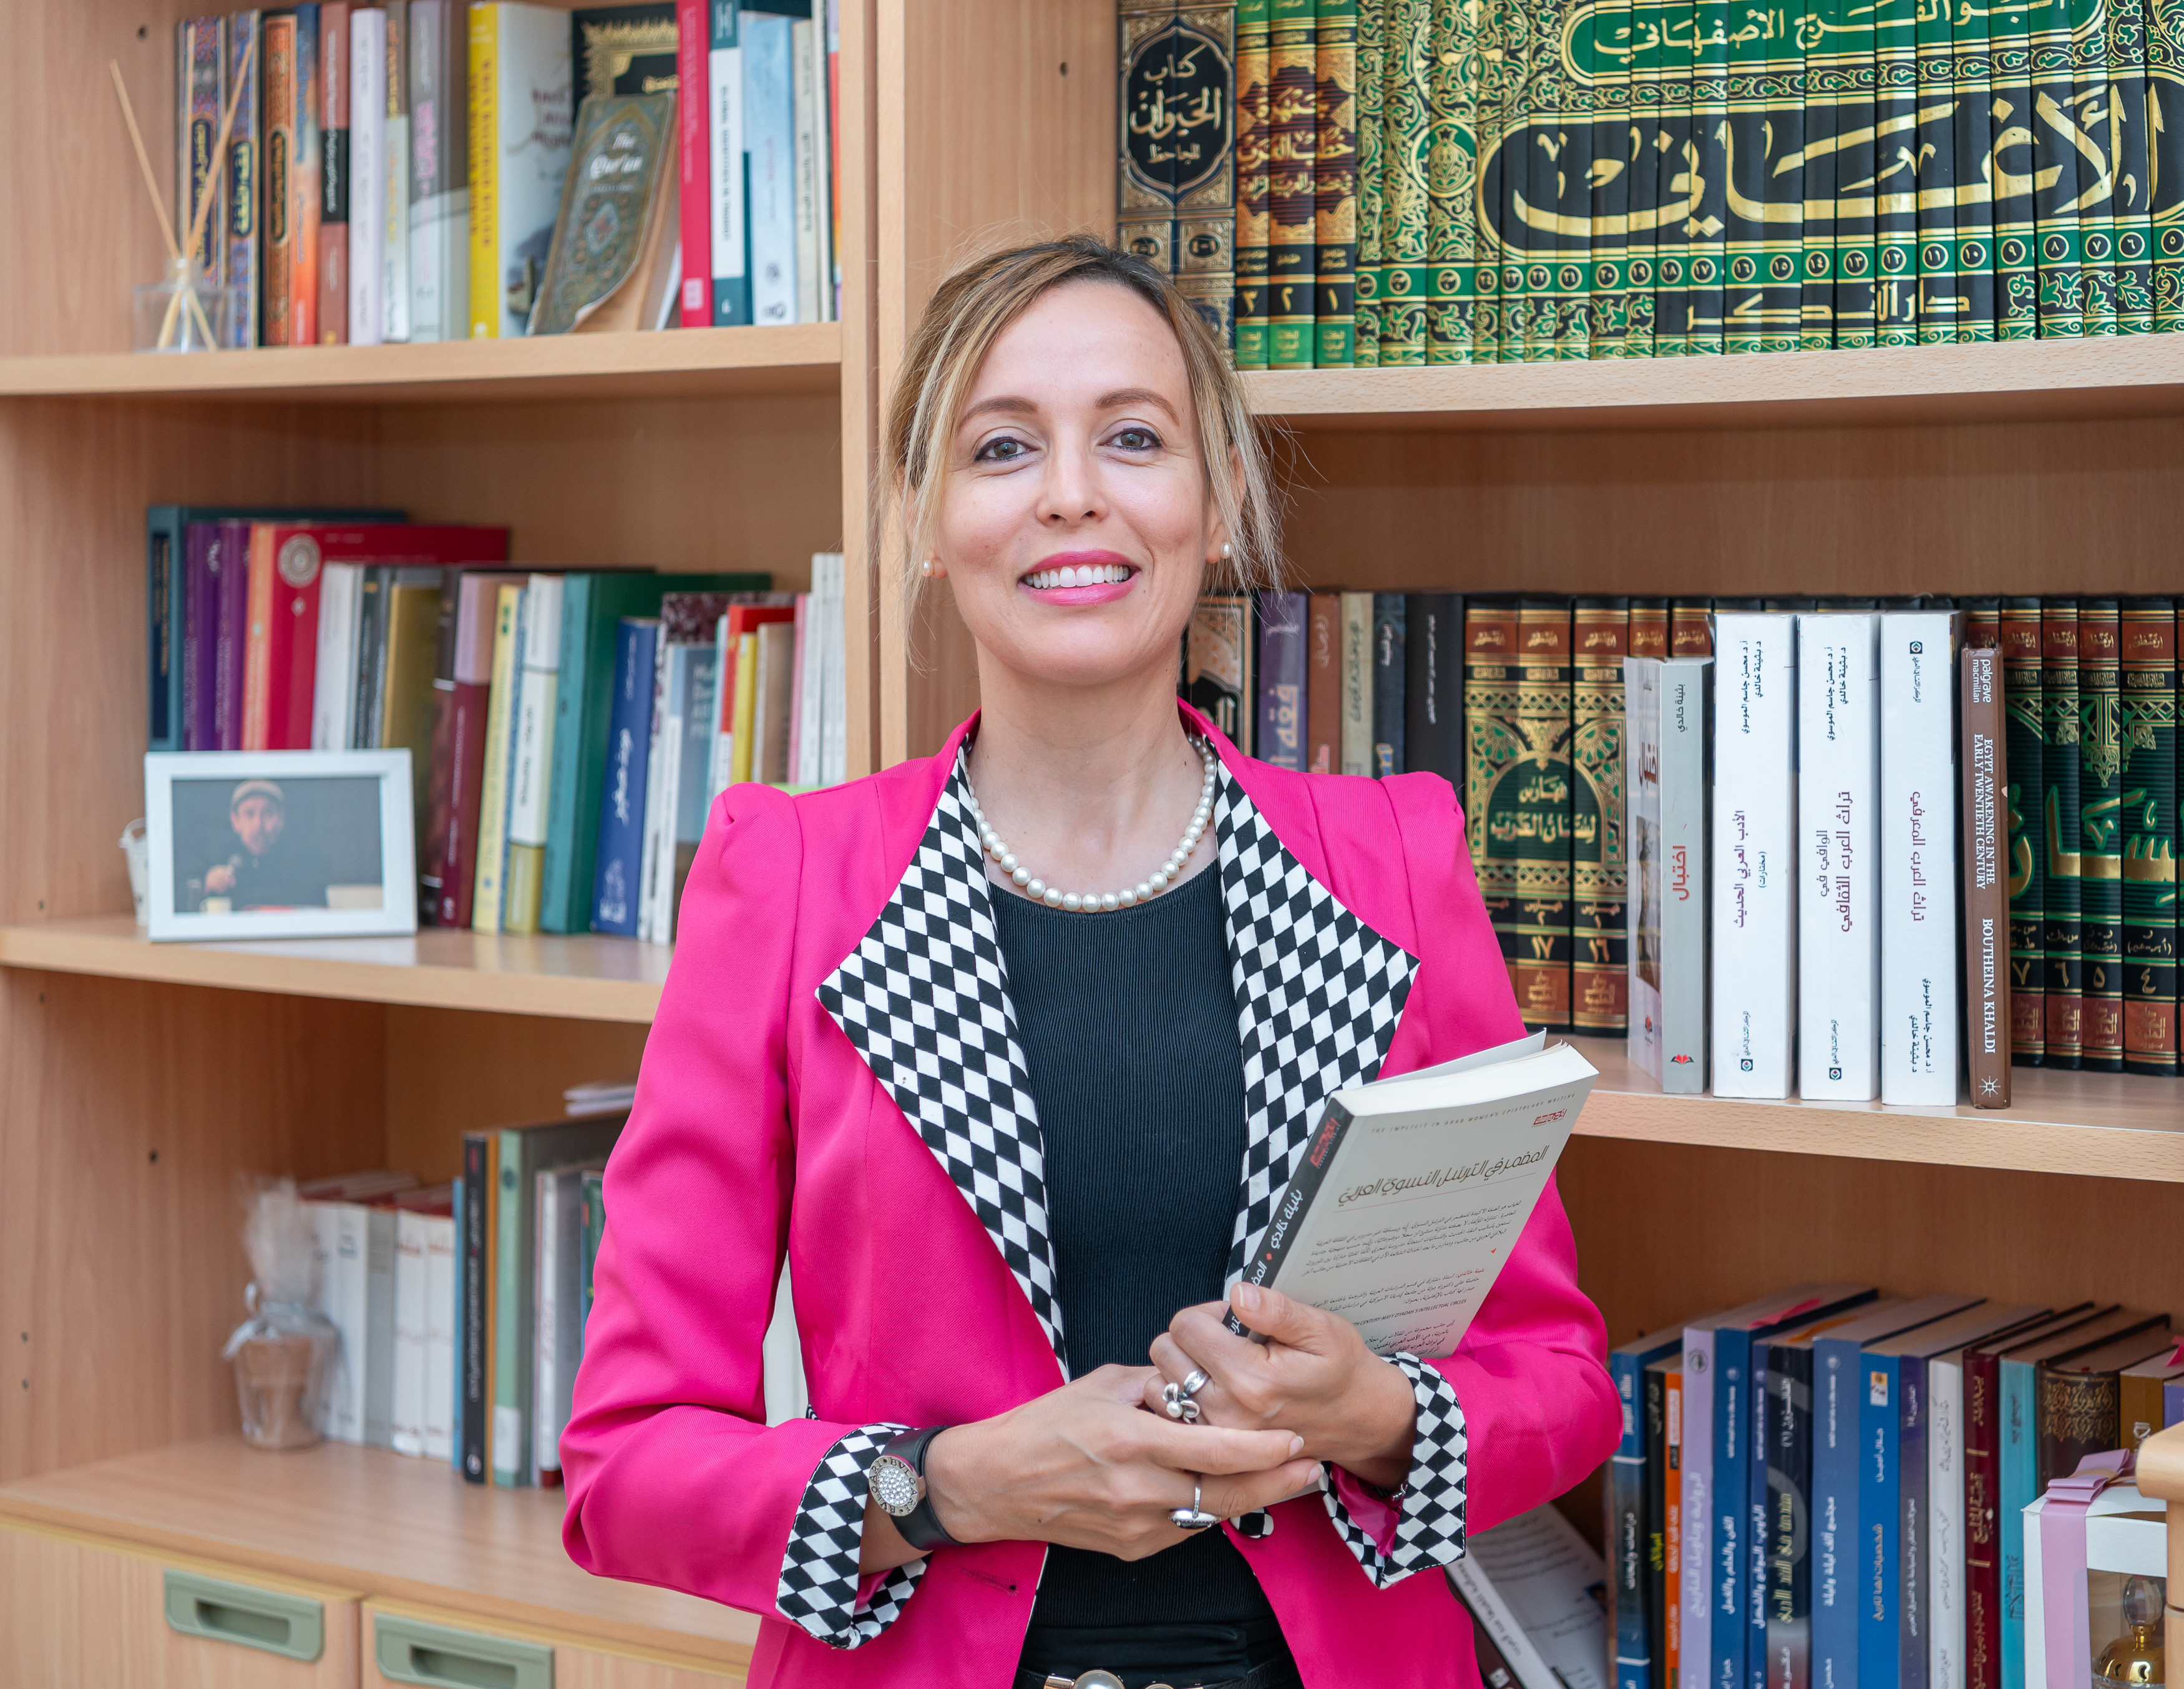 بحثية لباحثة وروائية في أمريكا الشارقة تنال الأعمال التقديرية لمساهمتها في الأدب العربي والمقارنات النسائية والتبادل الثقافي